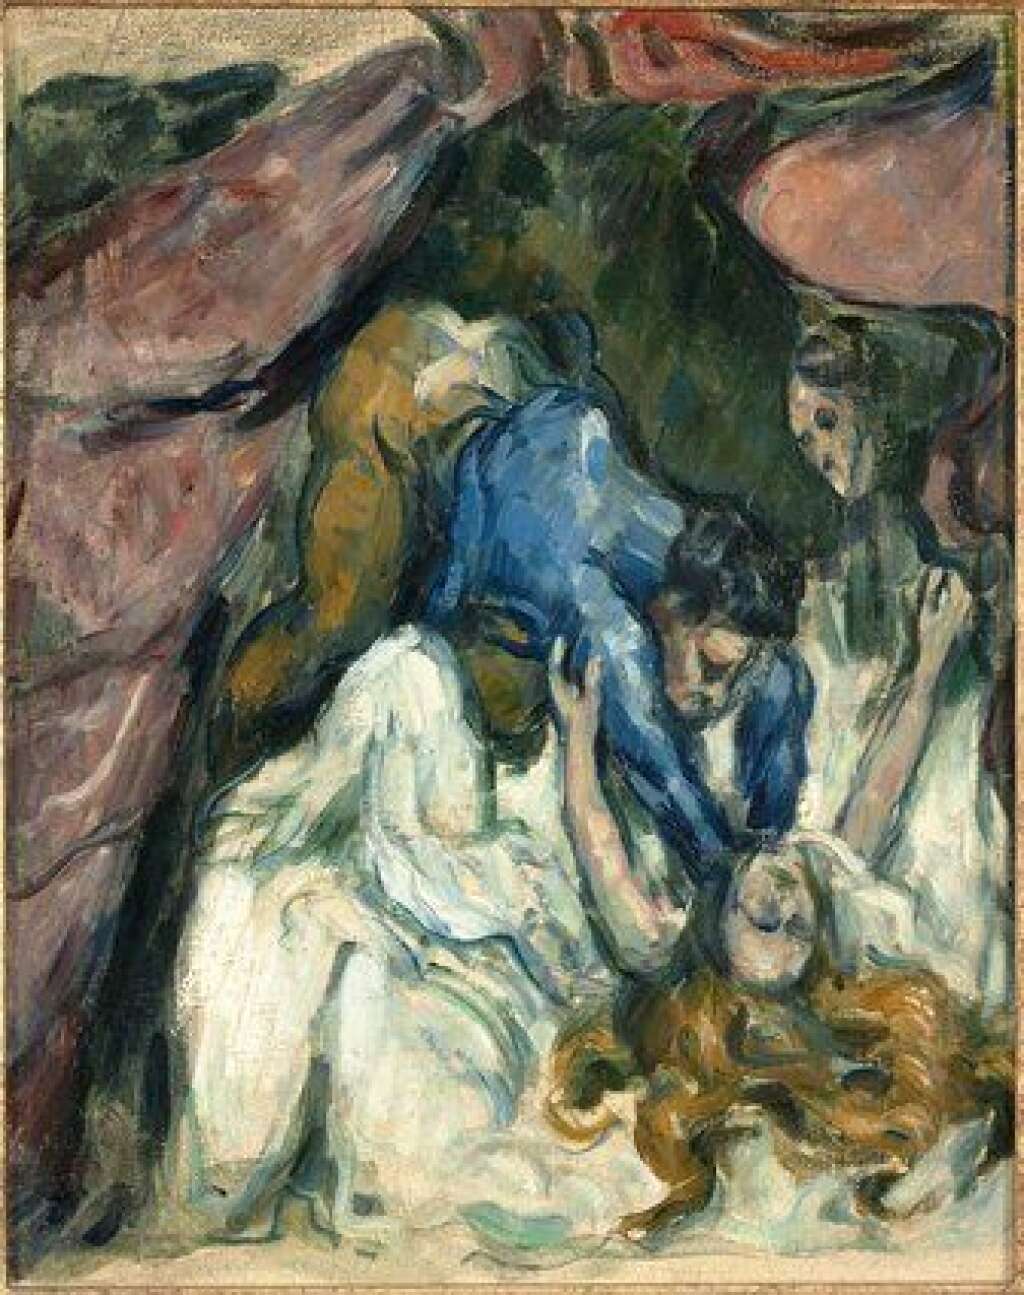 Sade. Attaquer le soleil - En éclatant notamment les notions de beauté et de laideur, les textes du "Divin Marquis" (1740-1814) ont bouleversé l'histoire des arts. Le musée d'Orsay s'interroge sur son influence à travers des œuvres de Goya, Géricault, Ingres, Rodin ou Picasso.<br><br>  <em>Paul Cézanne, La femme étranglée,  Entre 1870 et 1872</em> <br><br>  <strong><a href="http://www.musee-orsay.fr/fr/evenements/expositions/au-musee-dorsay/presentation-generale/article/sade-41230.html?tx_ttnews%5BbackPid%5D=254&cHash=3f6f98c92b" target="_blank">L'exposition a lieu du 14 octobre au 25 janvier 2015 au musée d'Orsay à Paris</a></strong>